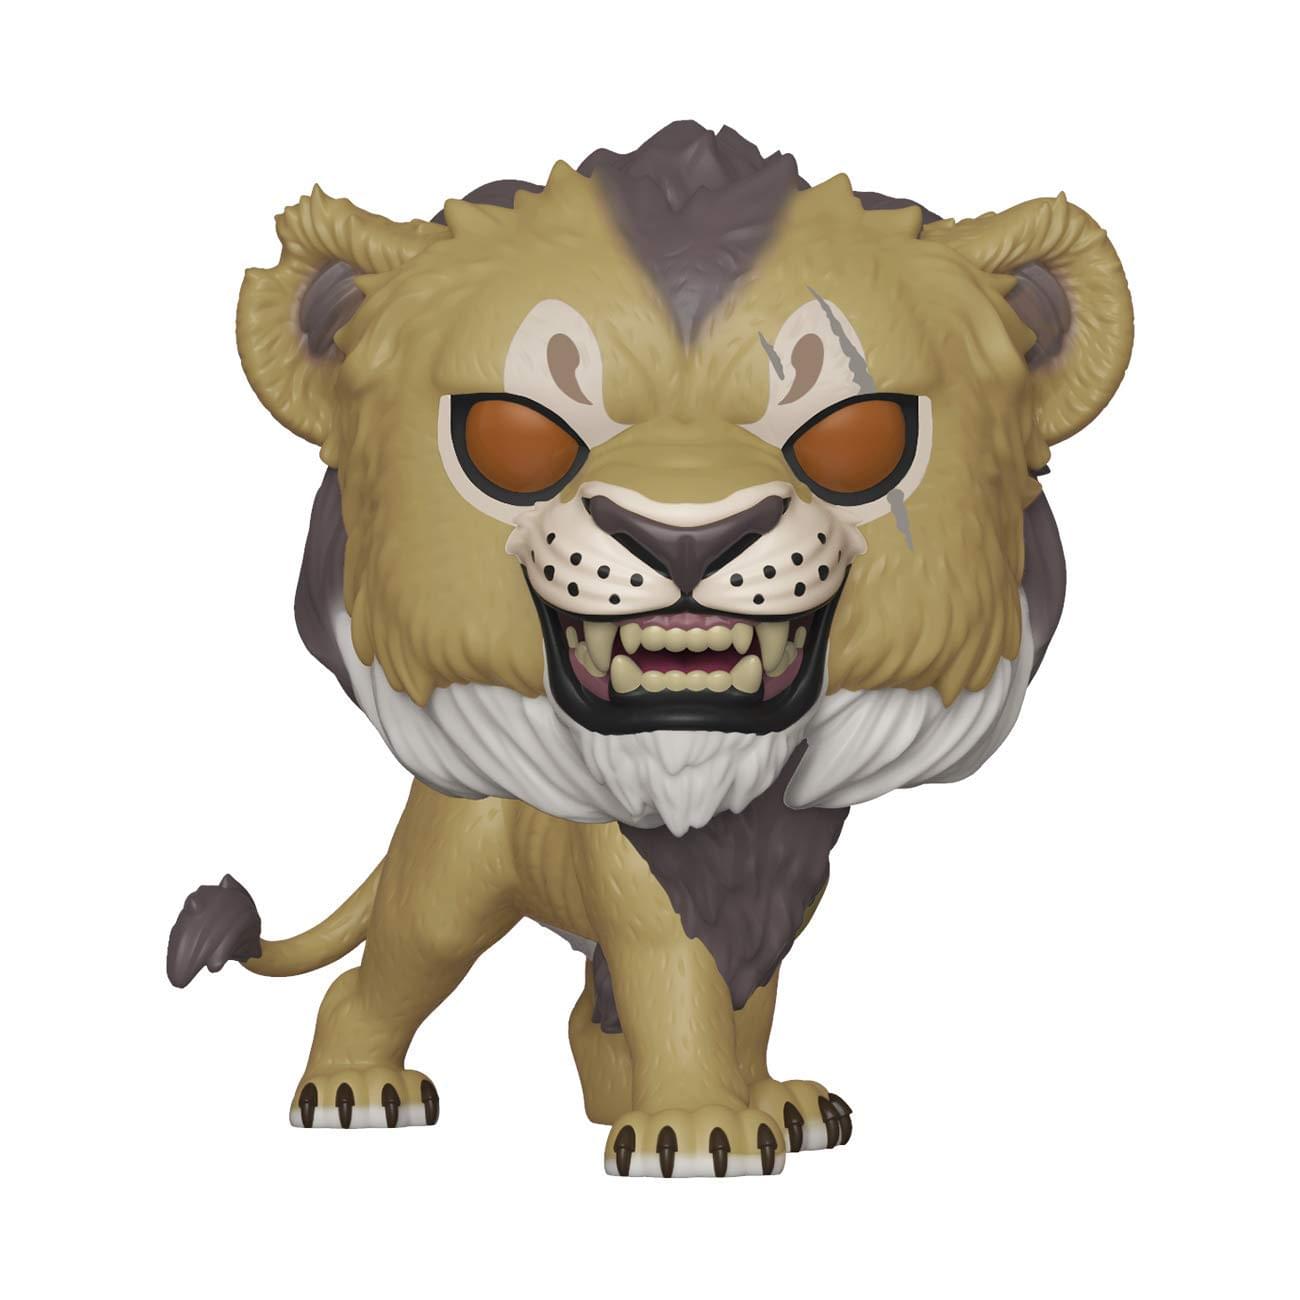 The Lion King Live Action Movie Funko POP Vinyl Figure - Scar